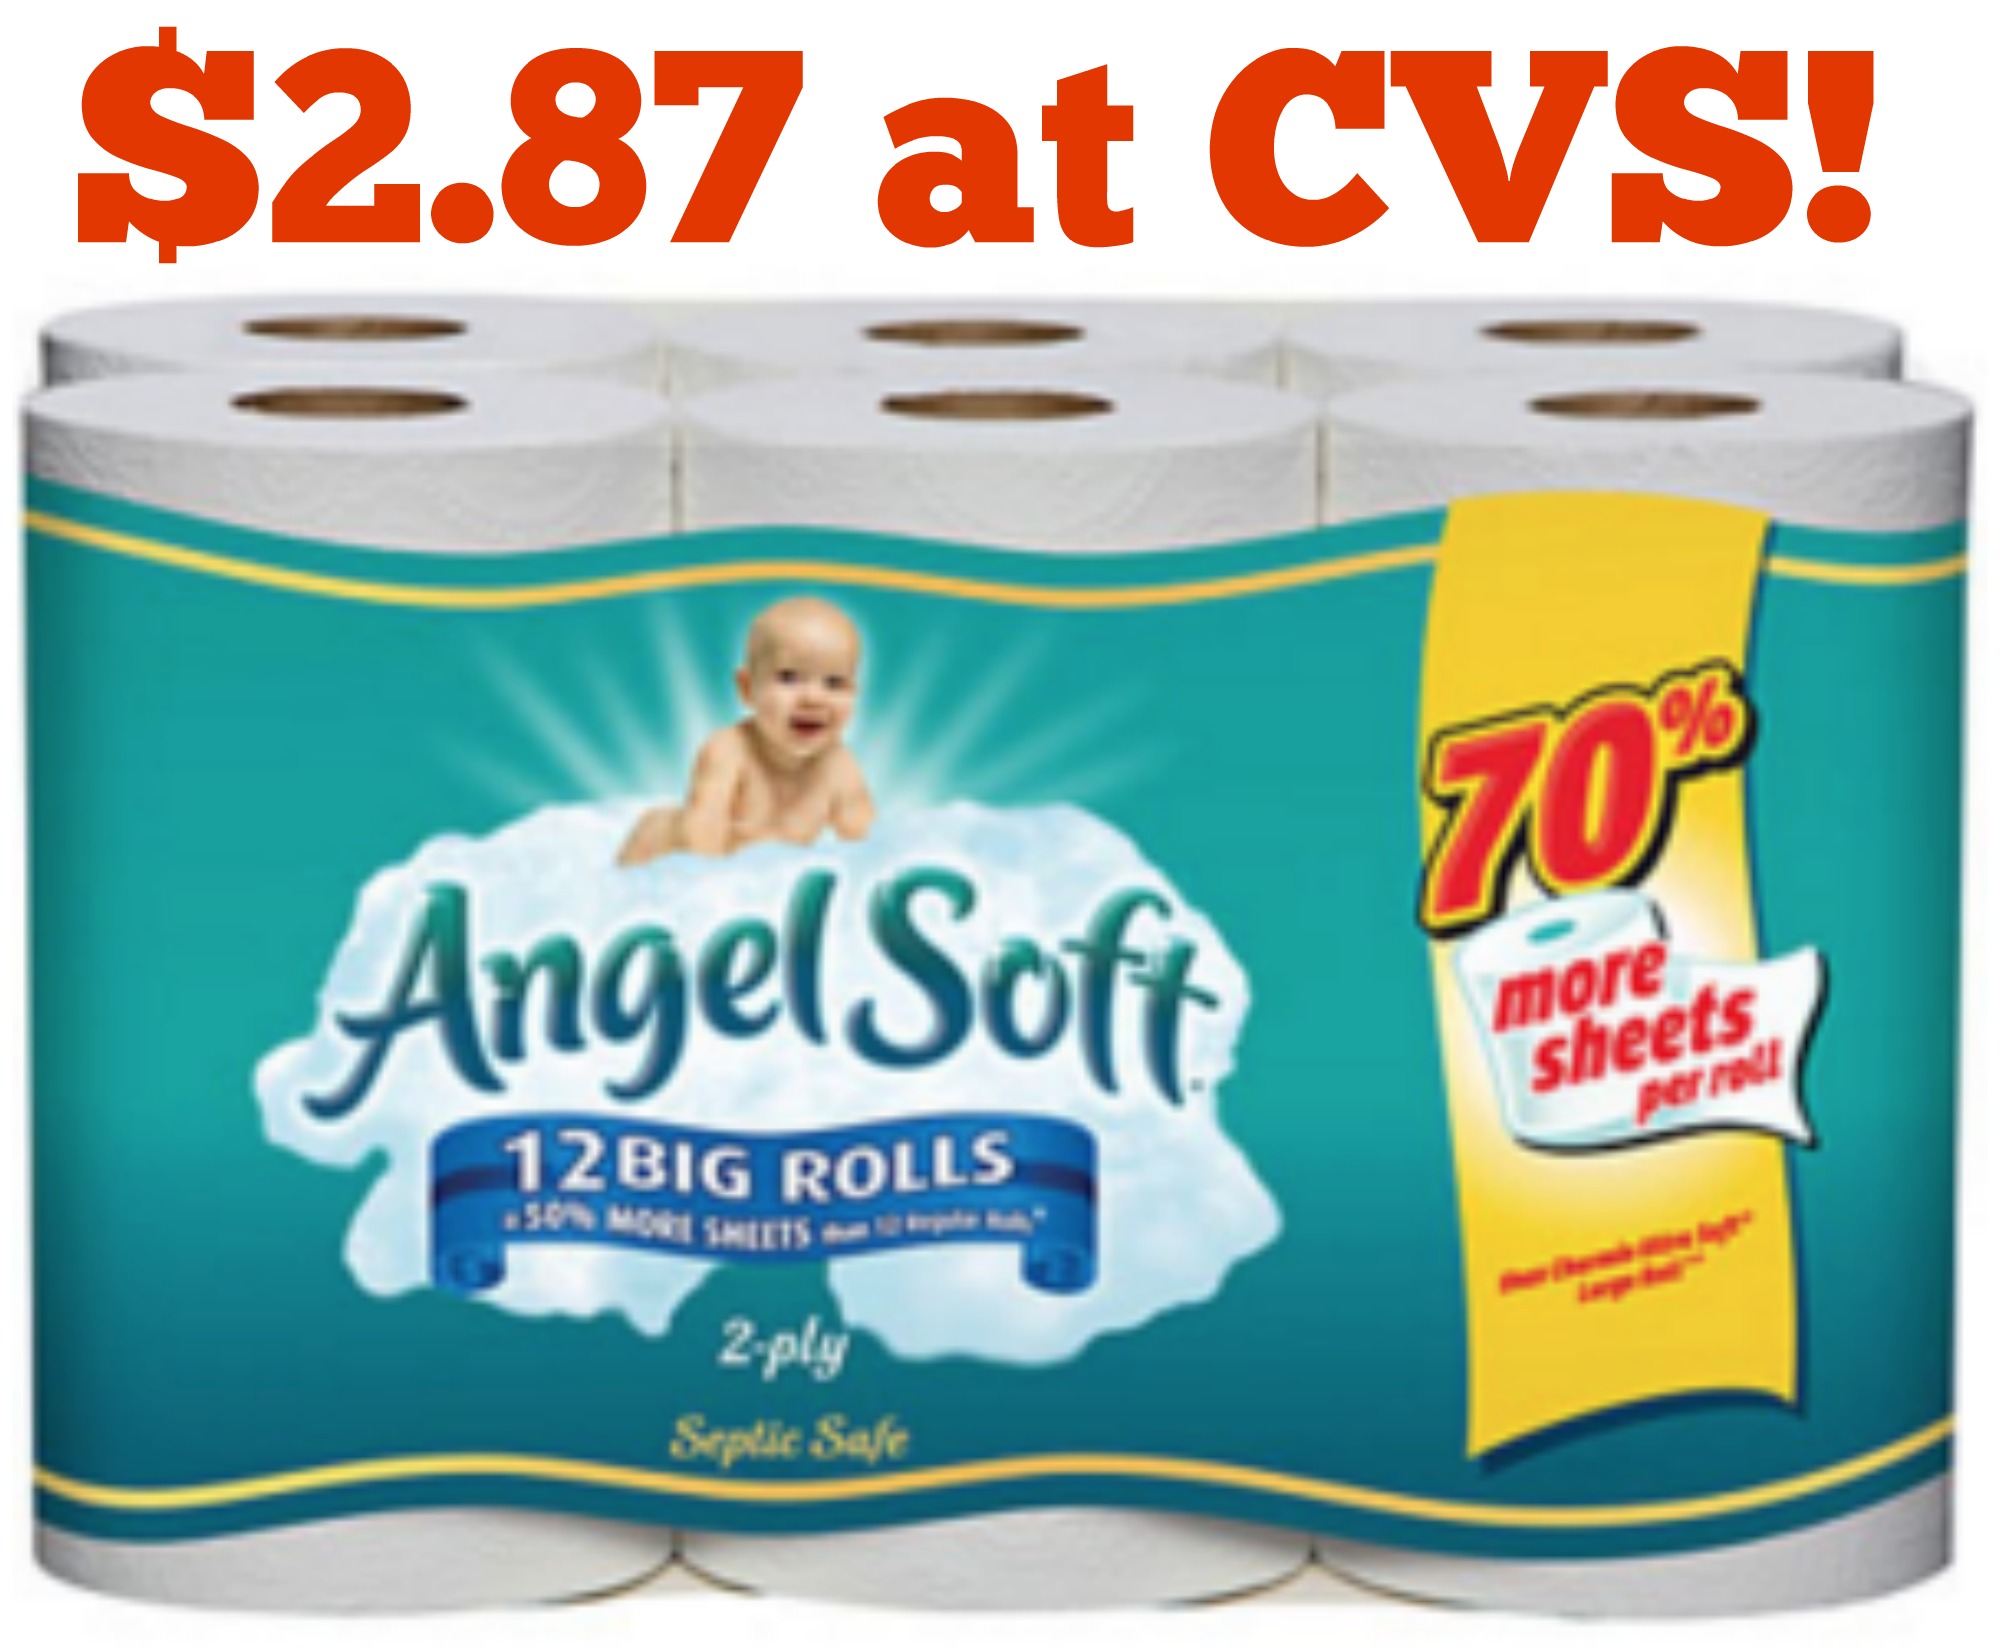 angel soft bath tissue 12 big rolls cvs a2s